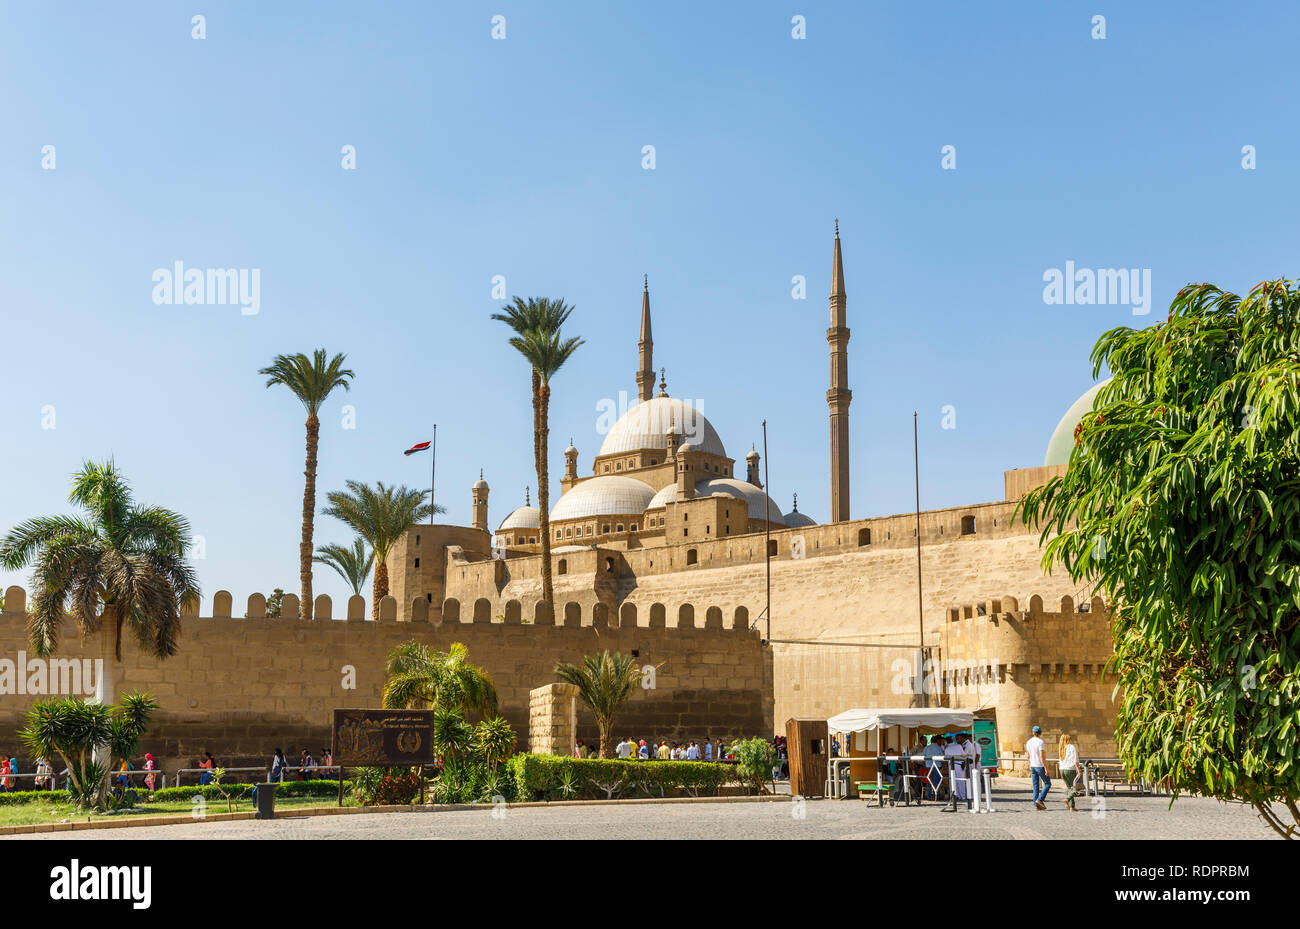 Große Moschee von Muhammad Ali Pascha innerhalb der Mauern der Zitadelle von Saladin, einem mittelalterlichen islamischen Festung in Kairo, Ägypten Stockfoto